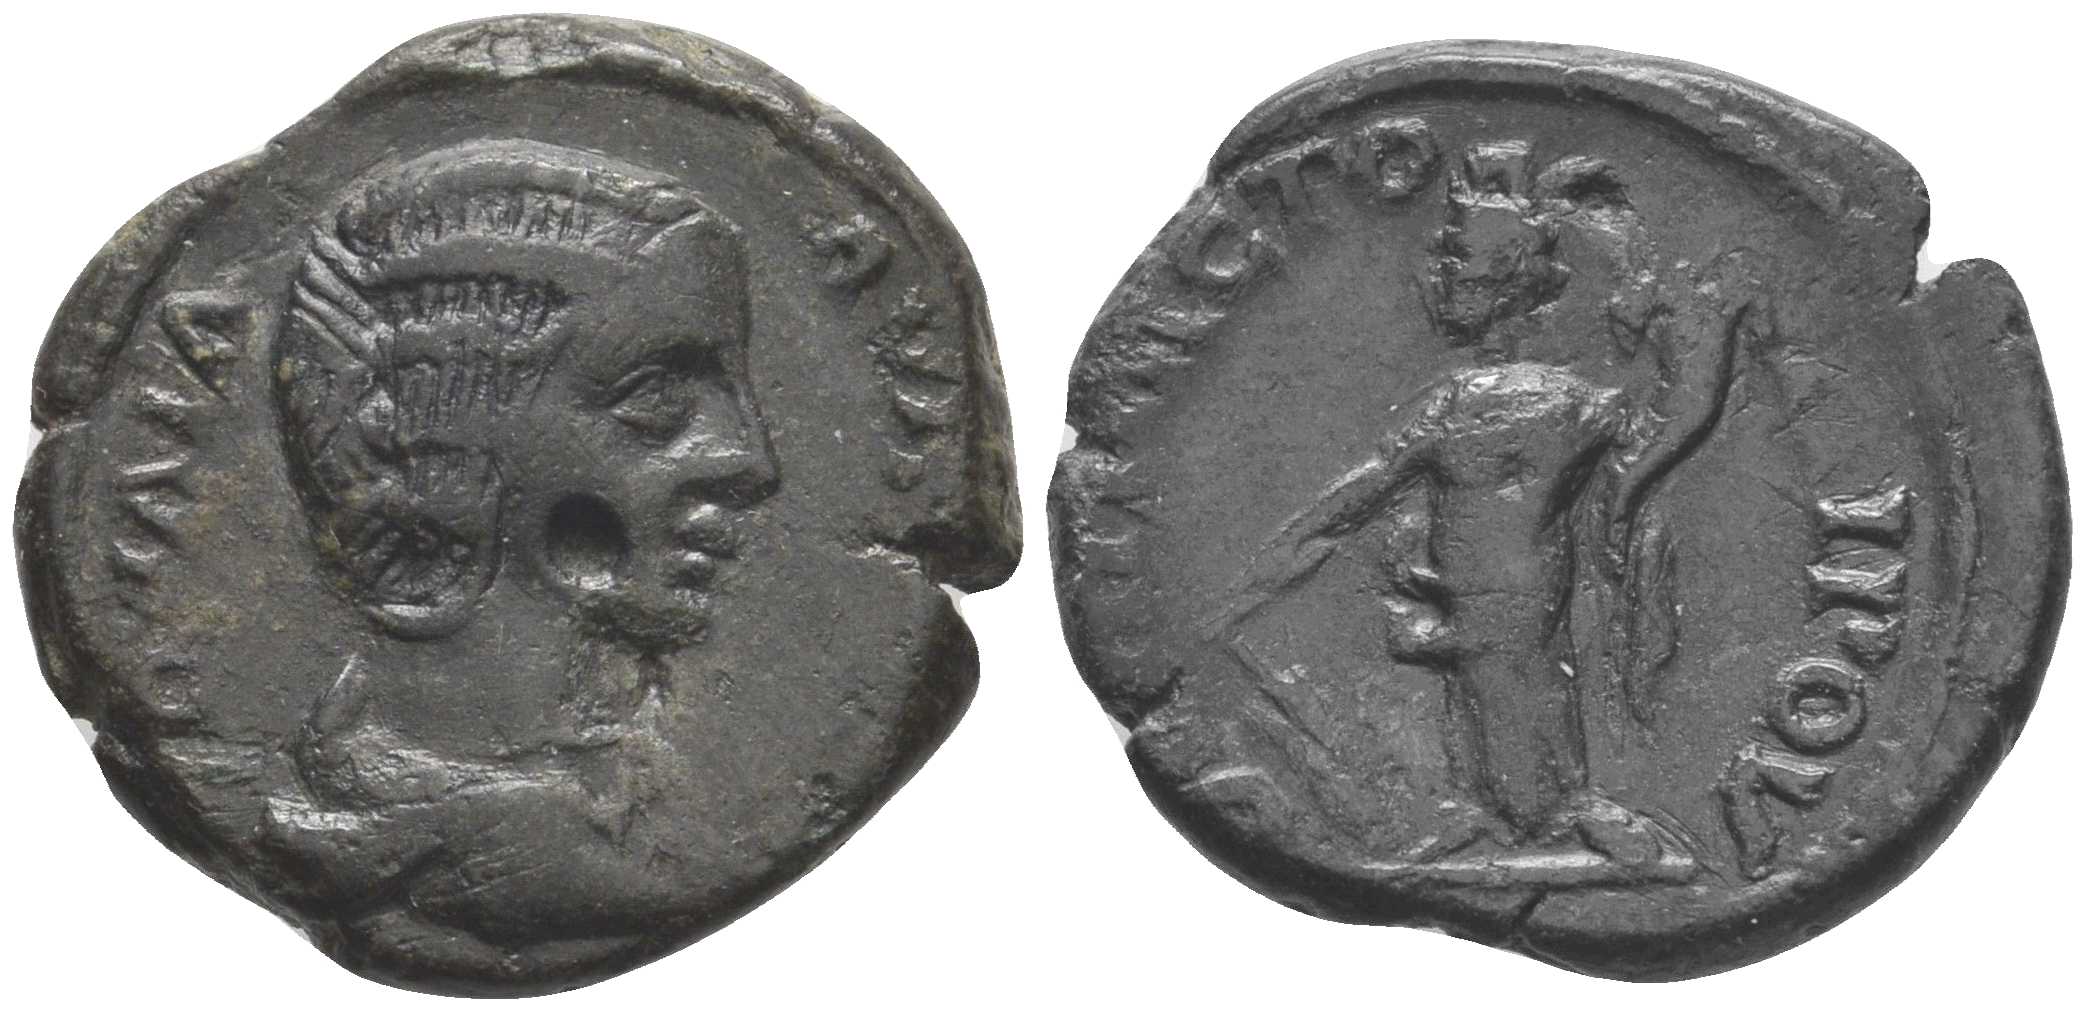 5902 Topeirus Thracia Iulia Domna AE